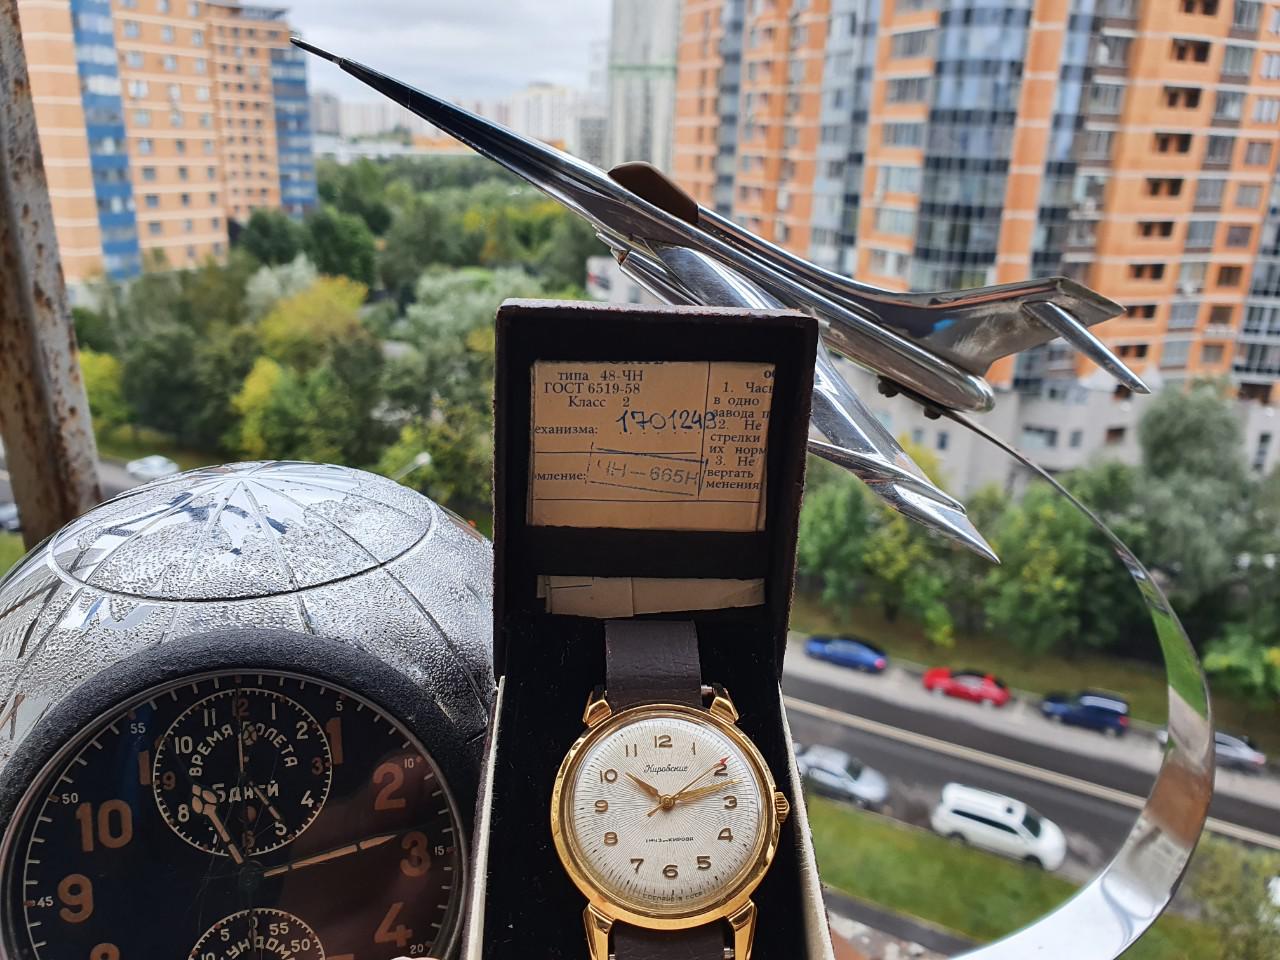 Đồng hồ Kirovskie - Chiếc đồng hồ Poljot càng nhện tuyệt phẩm Nos nguyên sổ hộp